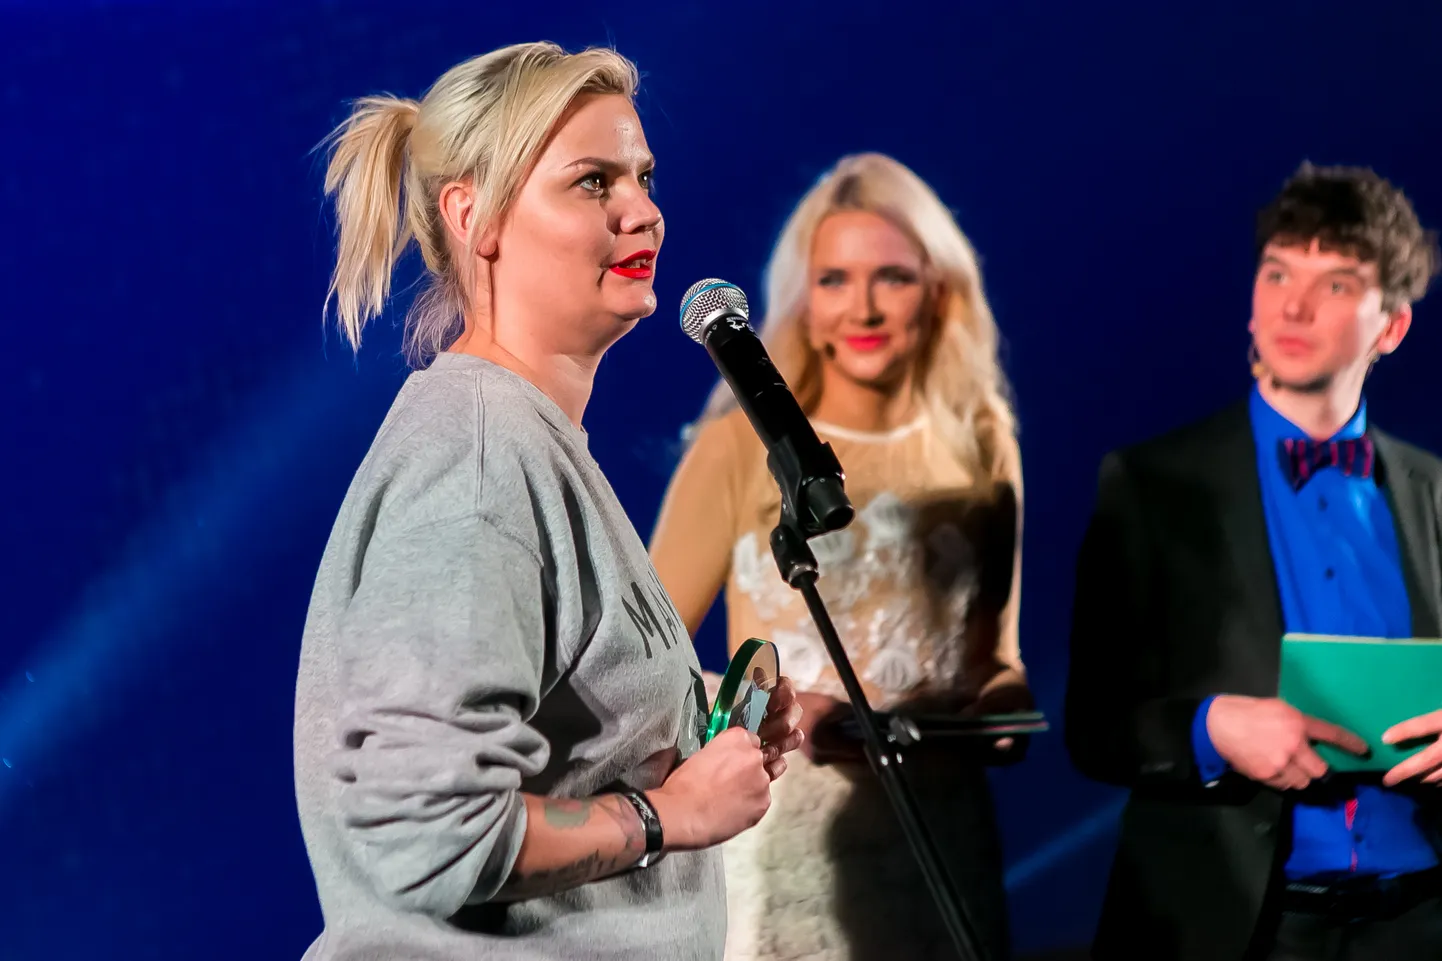 Mallukas Eesti Sotsiaalmeedia auhinnad 2018